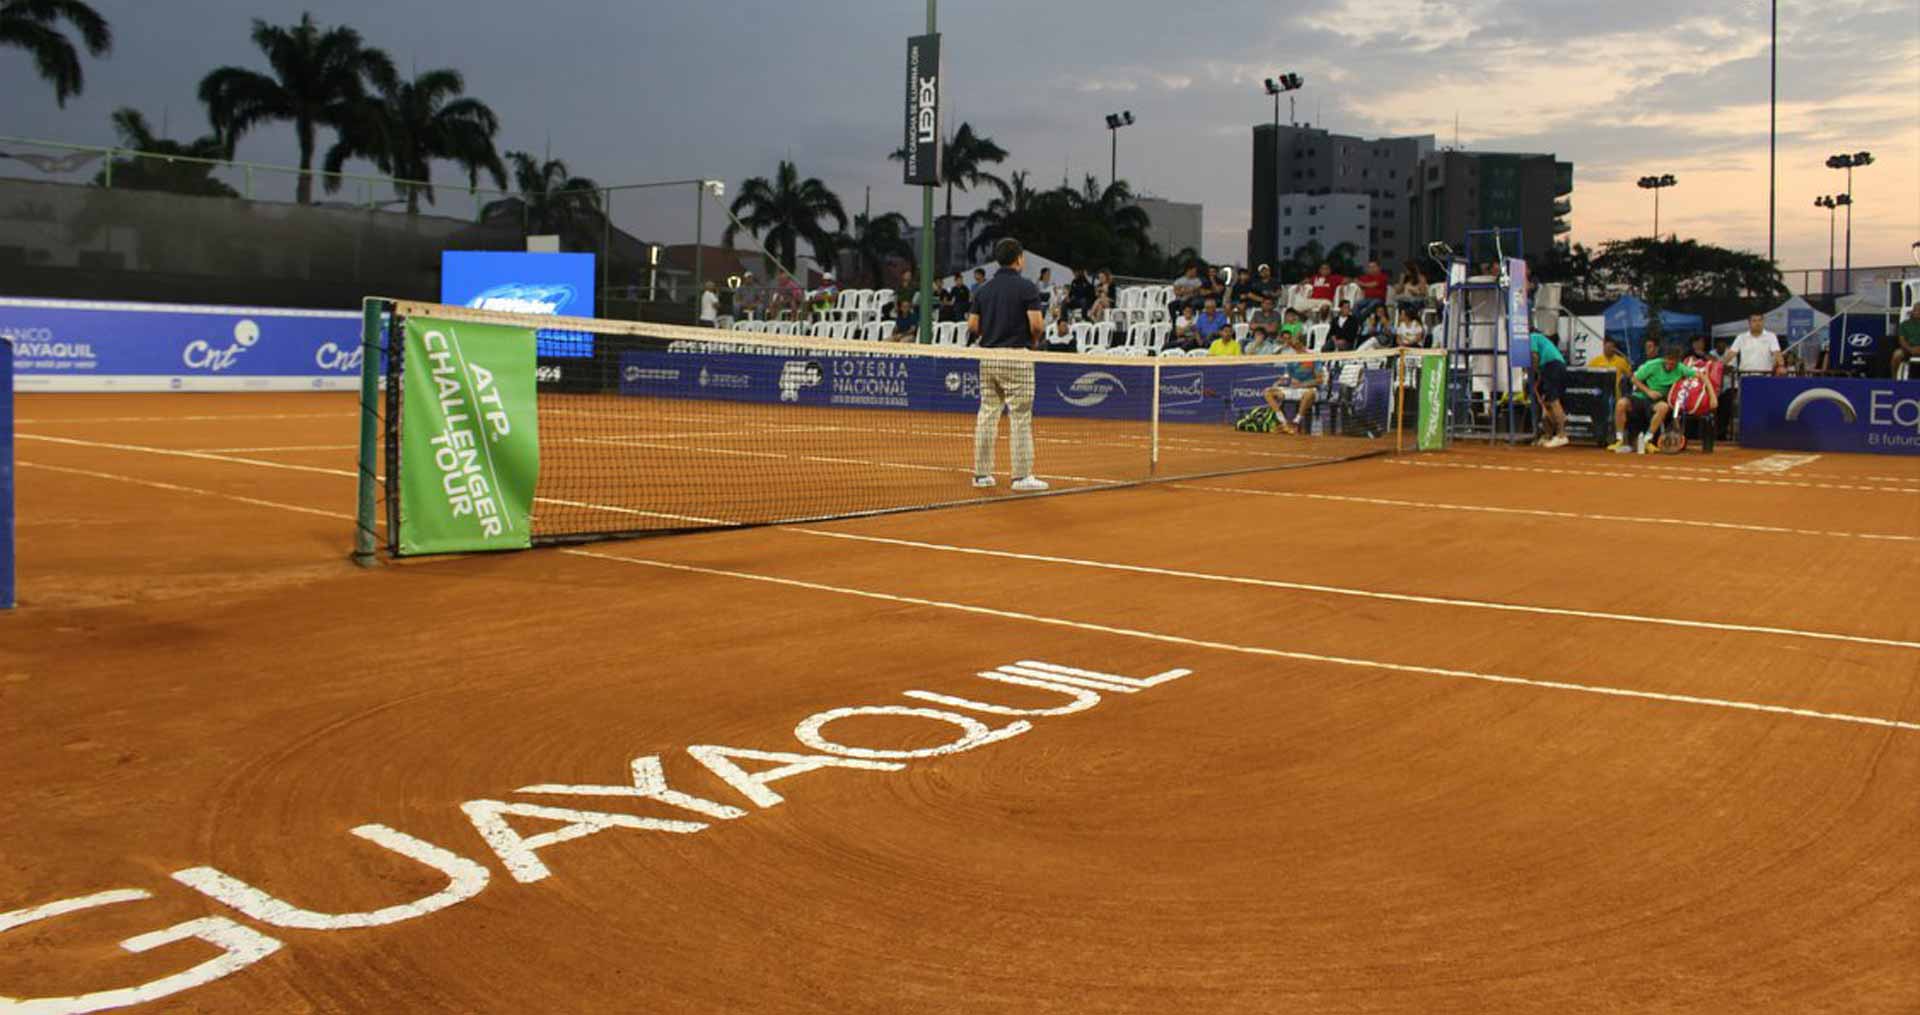 Club Nacional de Guayaquil